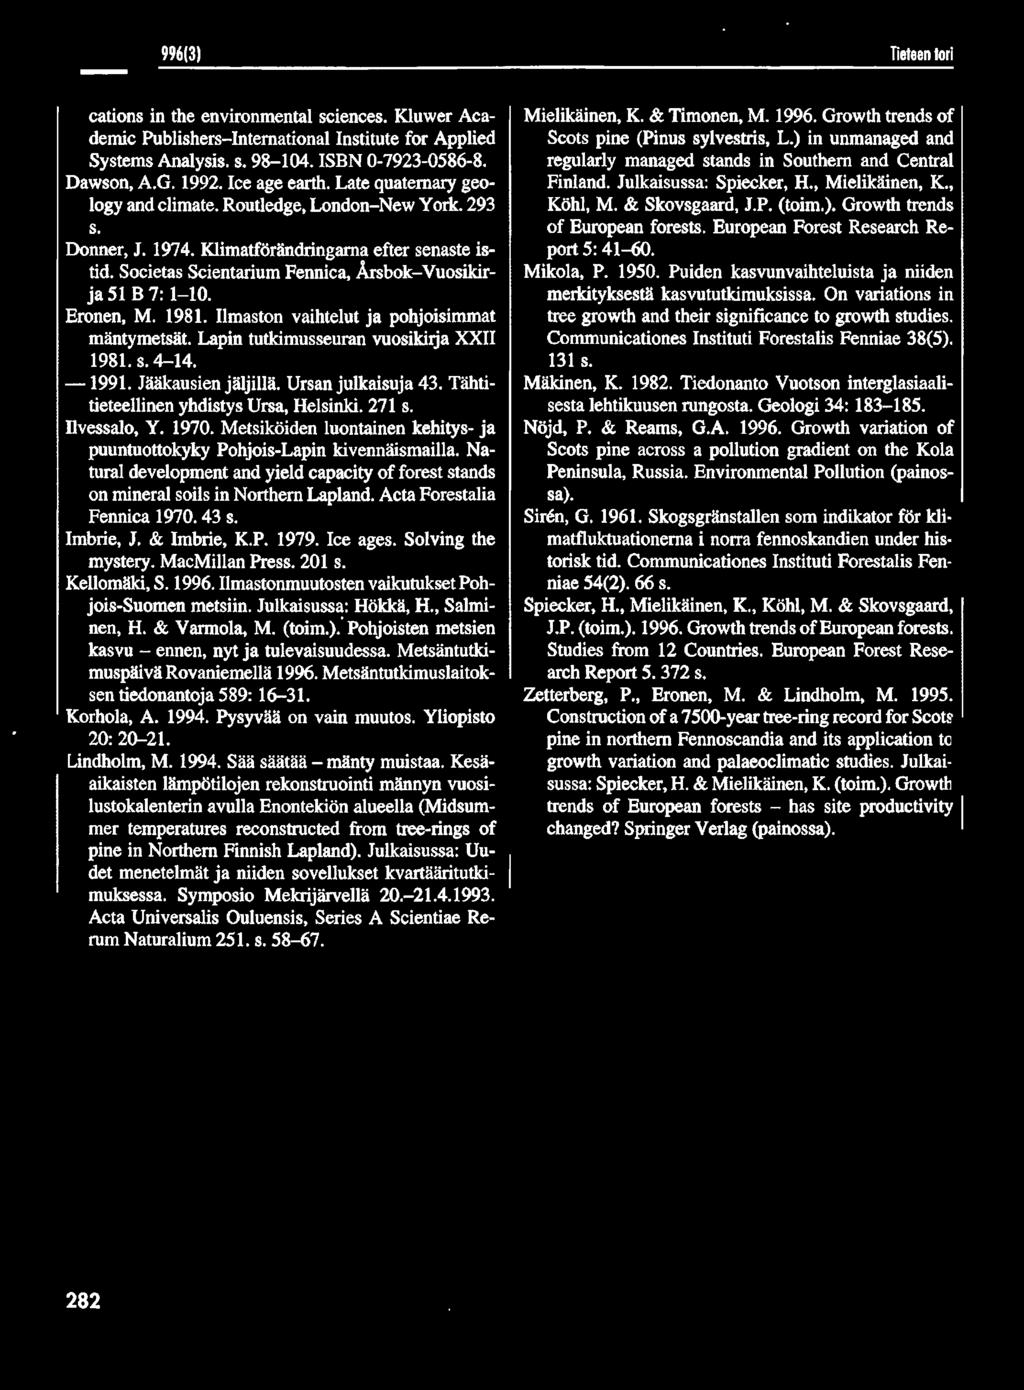 Societas Scientarium Fennica, Årsbok-Vuosikirja 51 B 7: 1-10. Eronen, M. 1981. Ilmaston vaihtelut ja pohjoisimmat mäntymetsät Lapin tutkimusseuran vuosikirja XXII 1981. s. 4-14. - 1991.